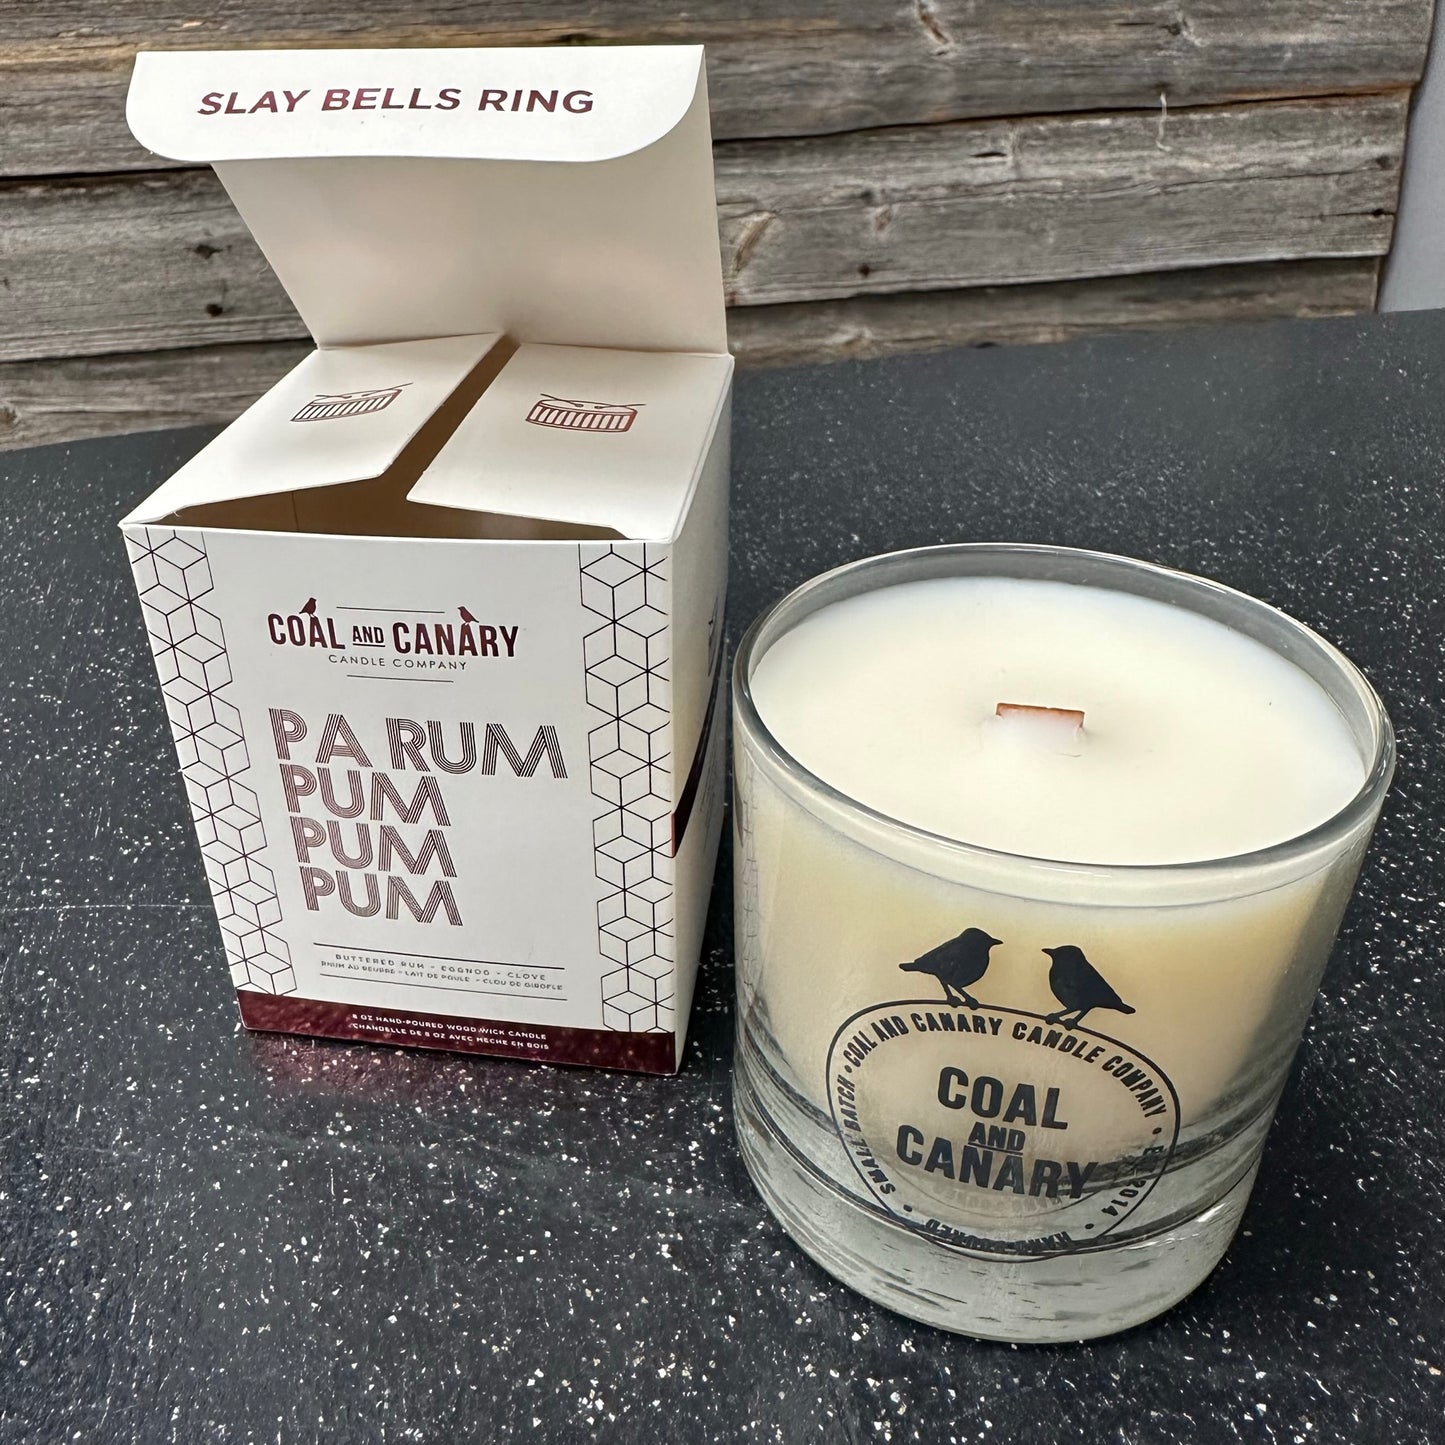 Pa-Rum-Pum-Pum-Pum by Coal & Canary